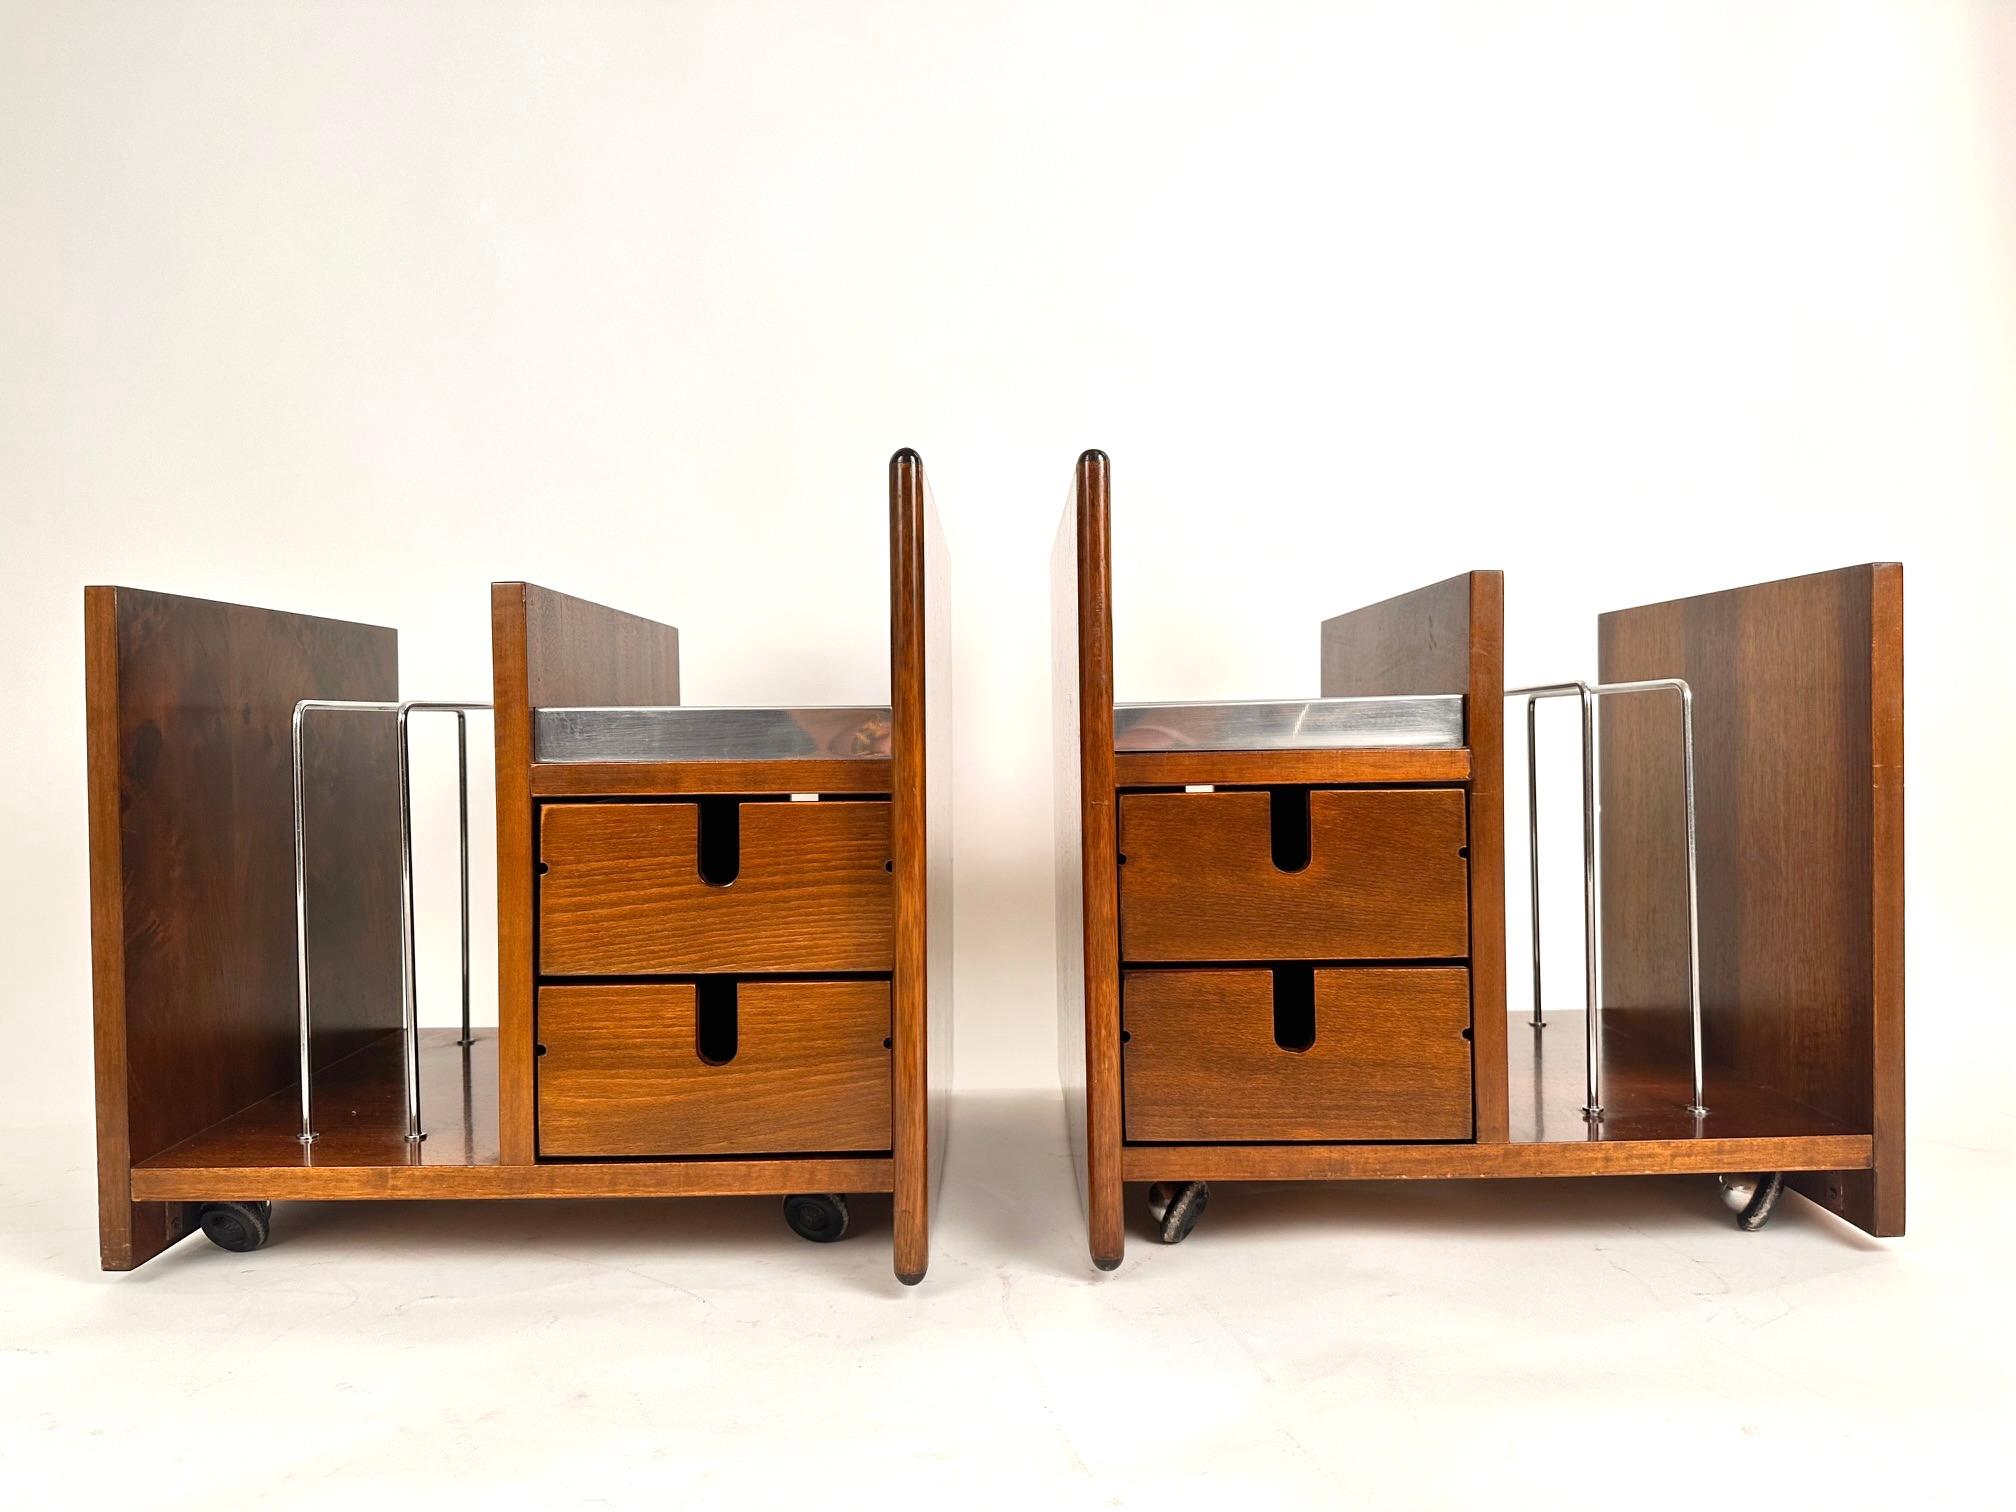 Un ensemble très rare d'une paire de tables d'appoint/porte-revues conçu par Ettore Condit dans les années 70.Deux boîtes ensemble avec un espace porte-revues.Teck et acier.Excellent état.
Emballage professionnel gratuit.